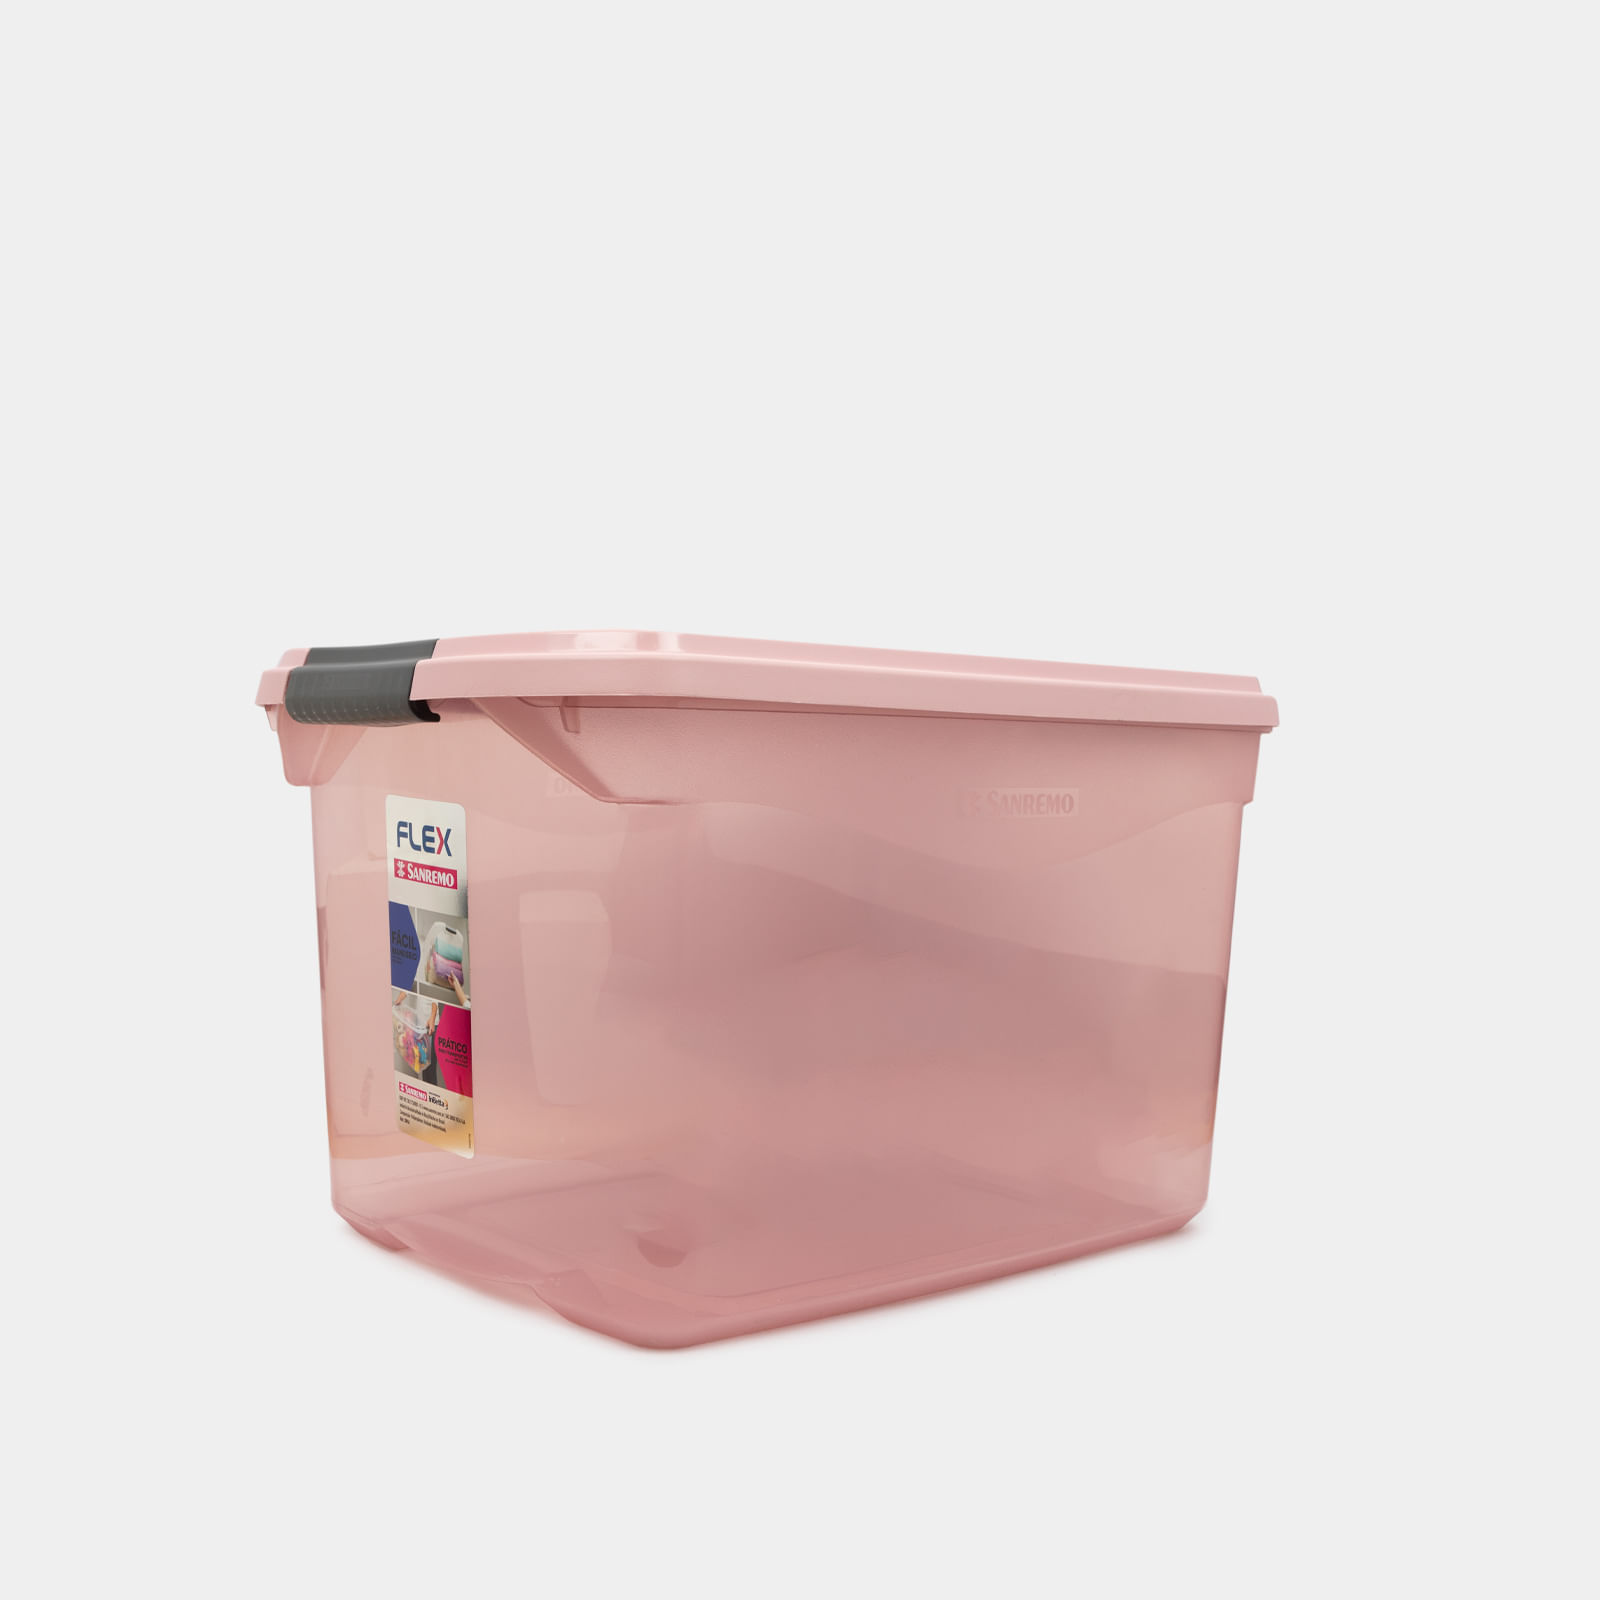 Caja organizadora plástica de 26 litros con tapa, rosado